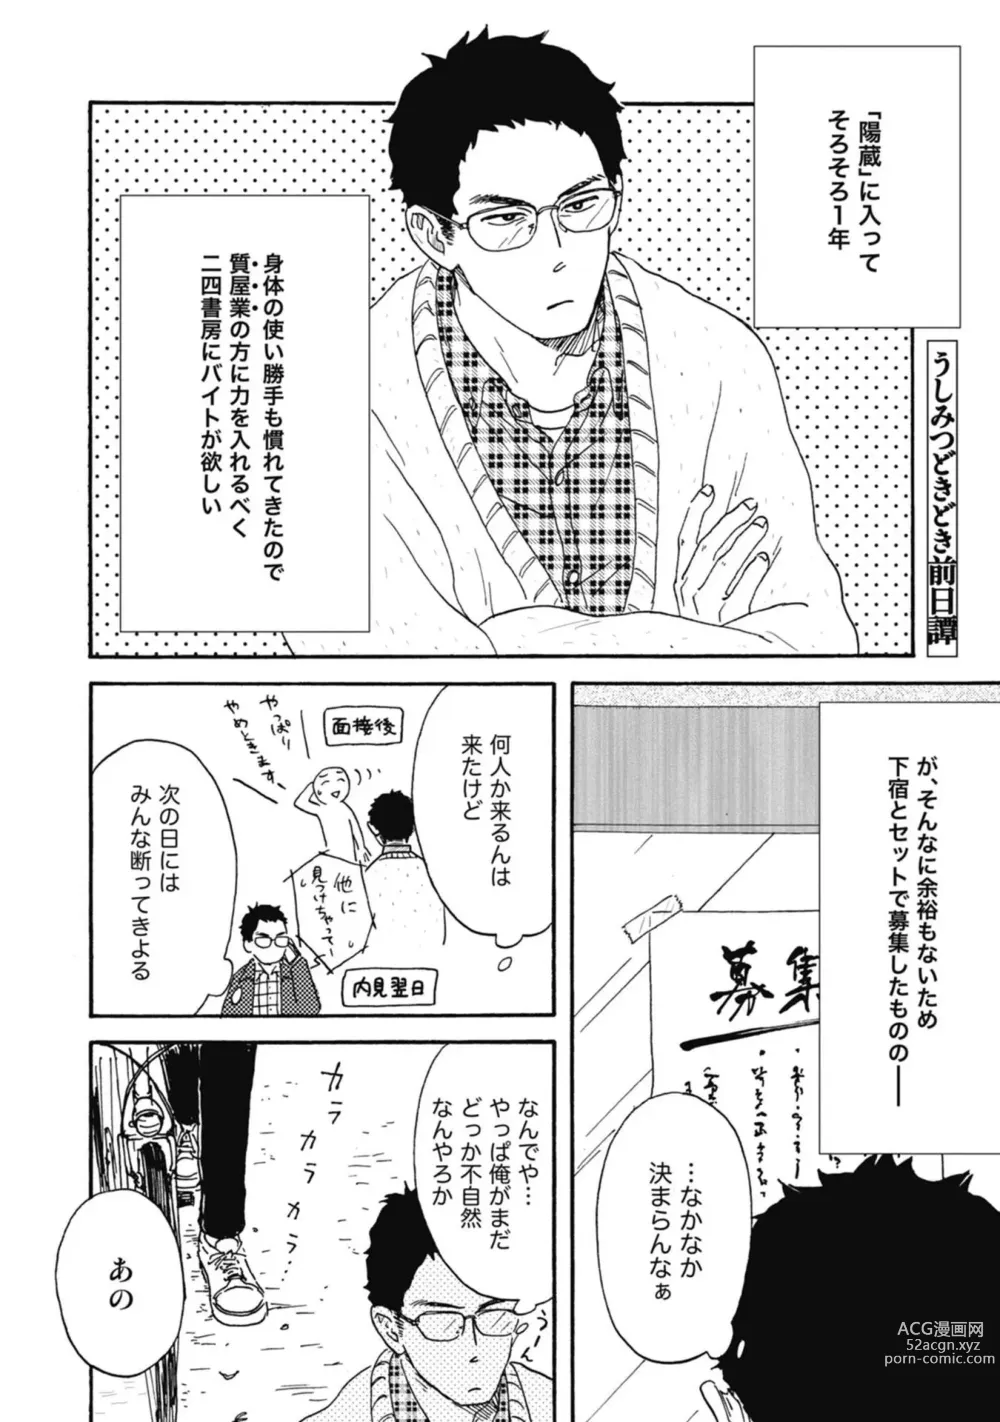 Page 210 of manga Ushimitsu Dokidoki Kosyotentan